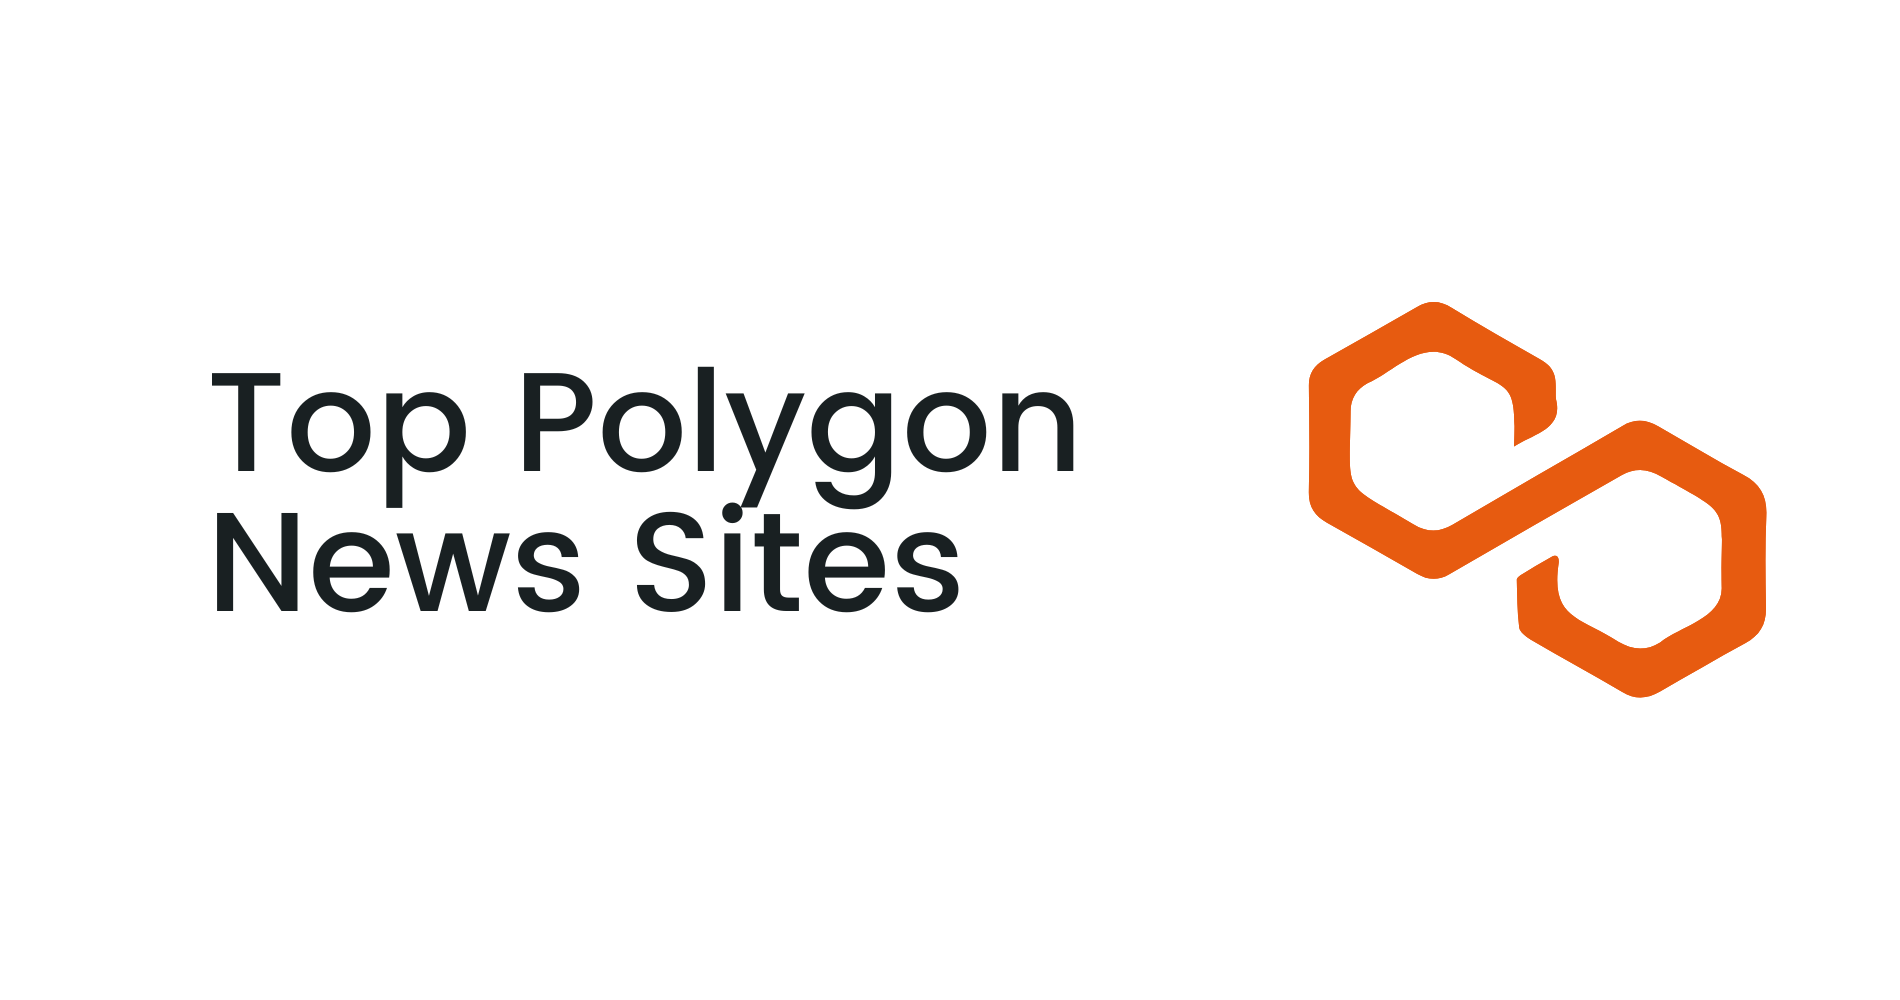 Top Polygon News Sites